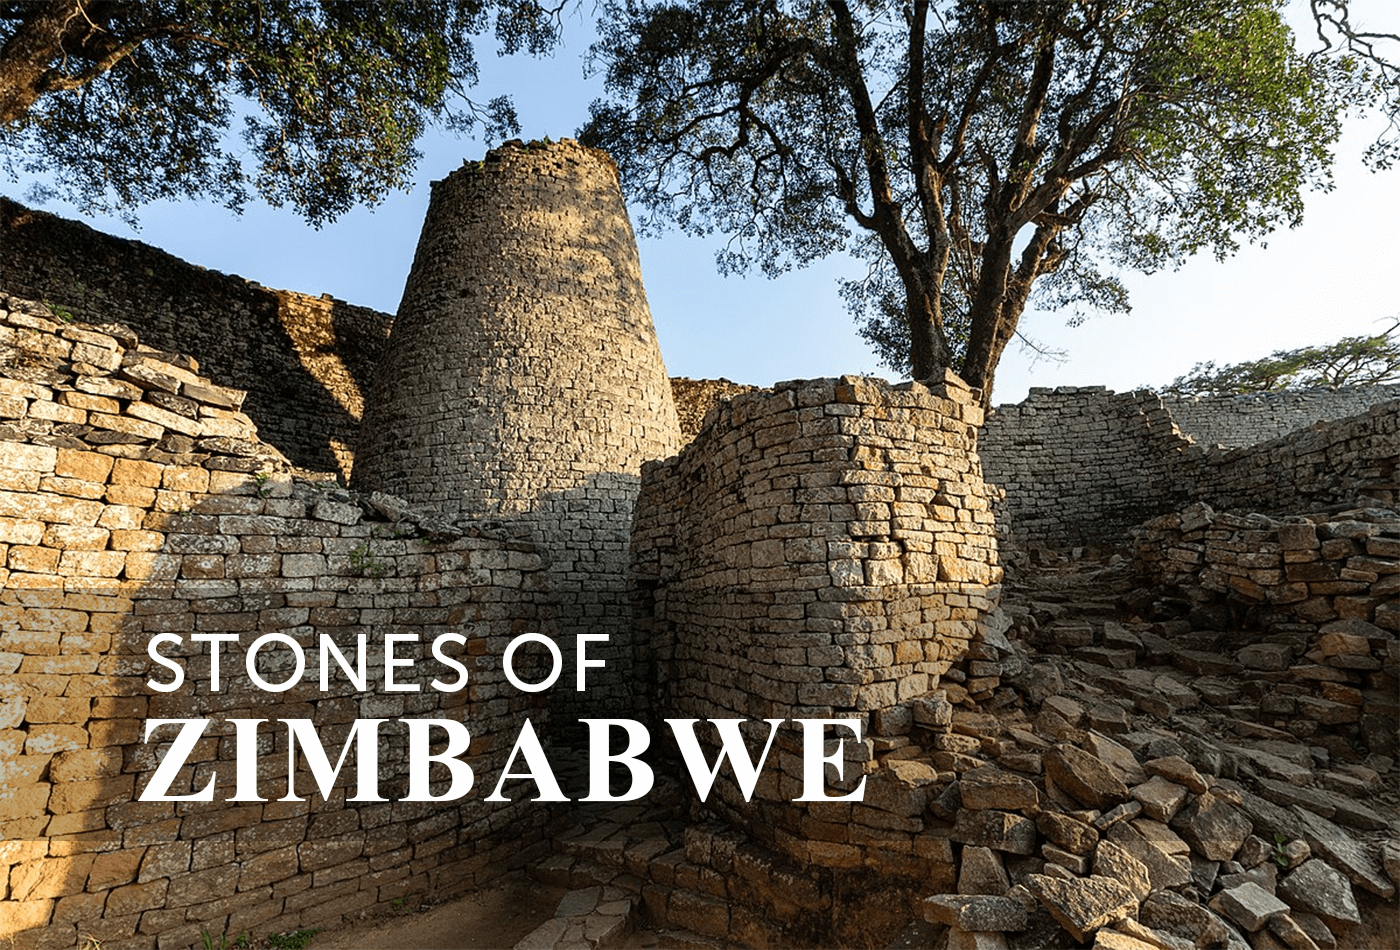 Stones of Zimbabwe